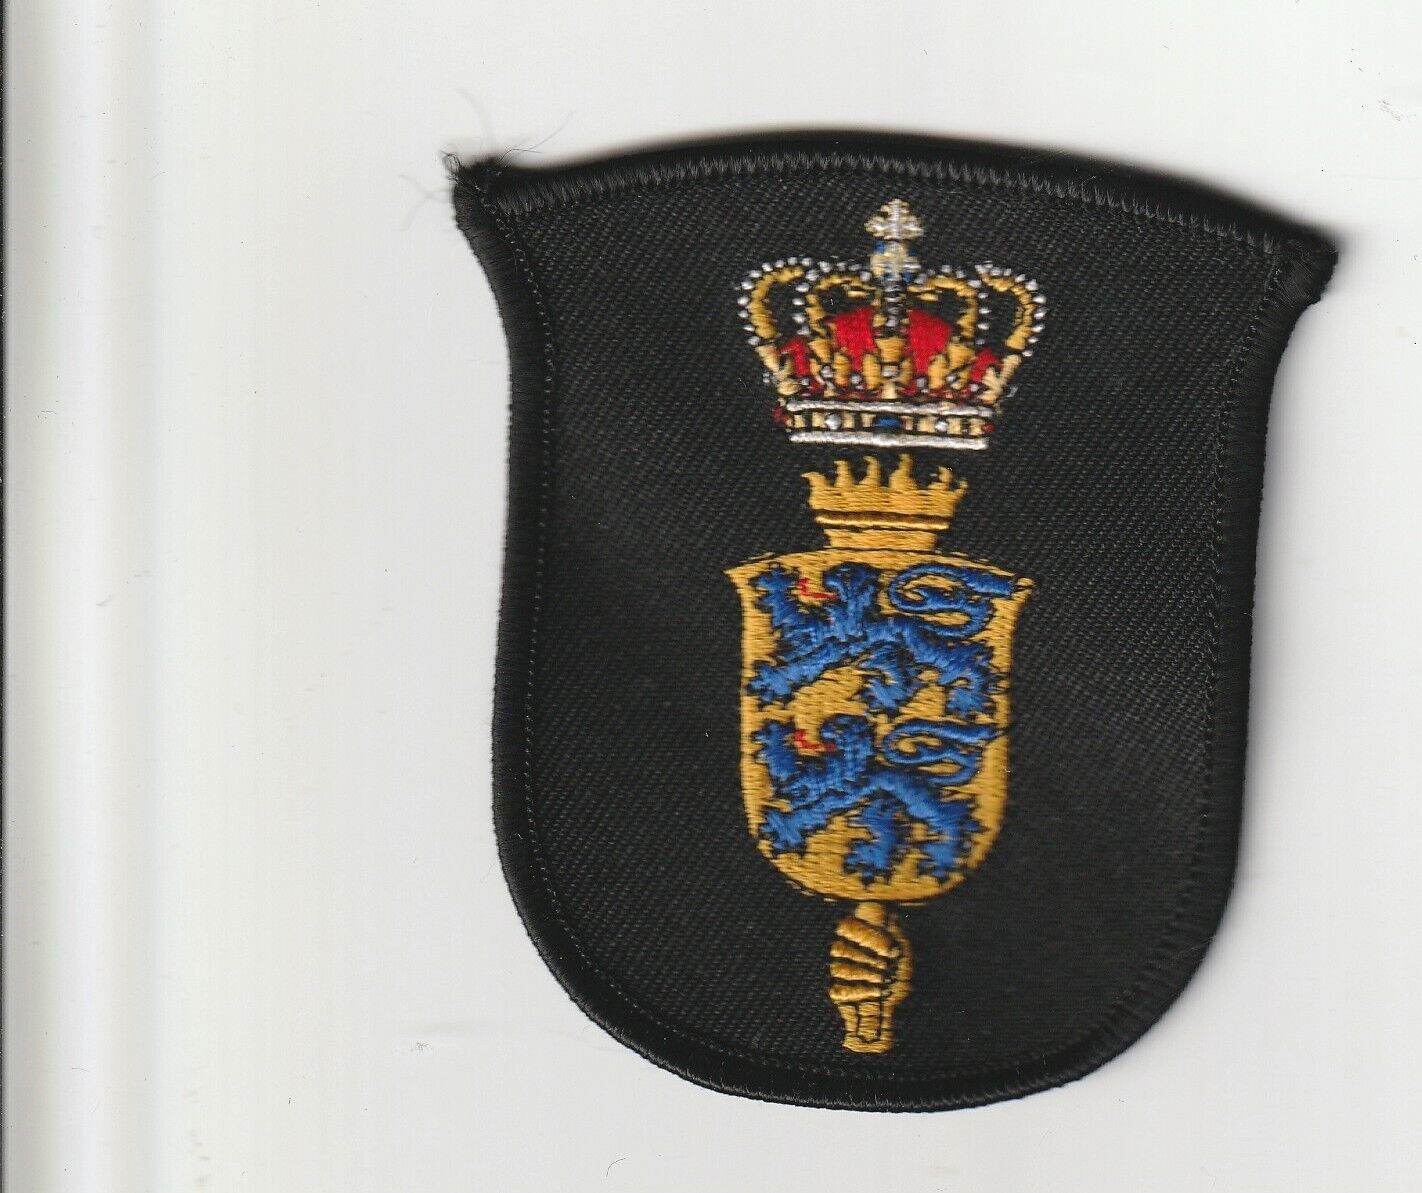 Denmark army Home Guard Hjemmeværnet Sønderjylland district patch